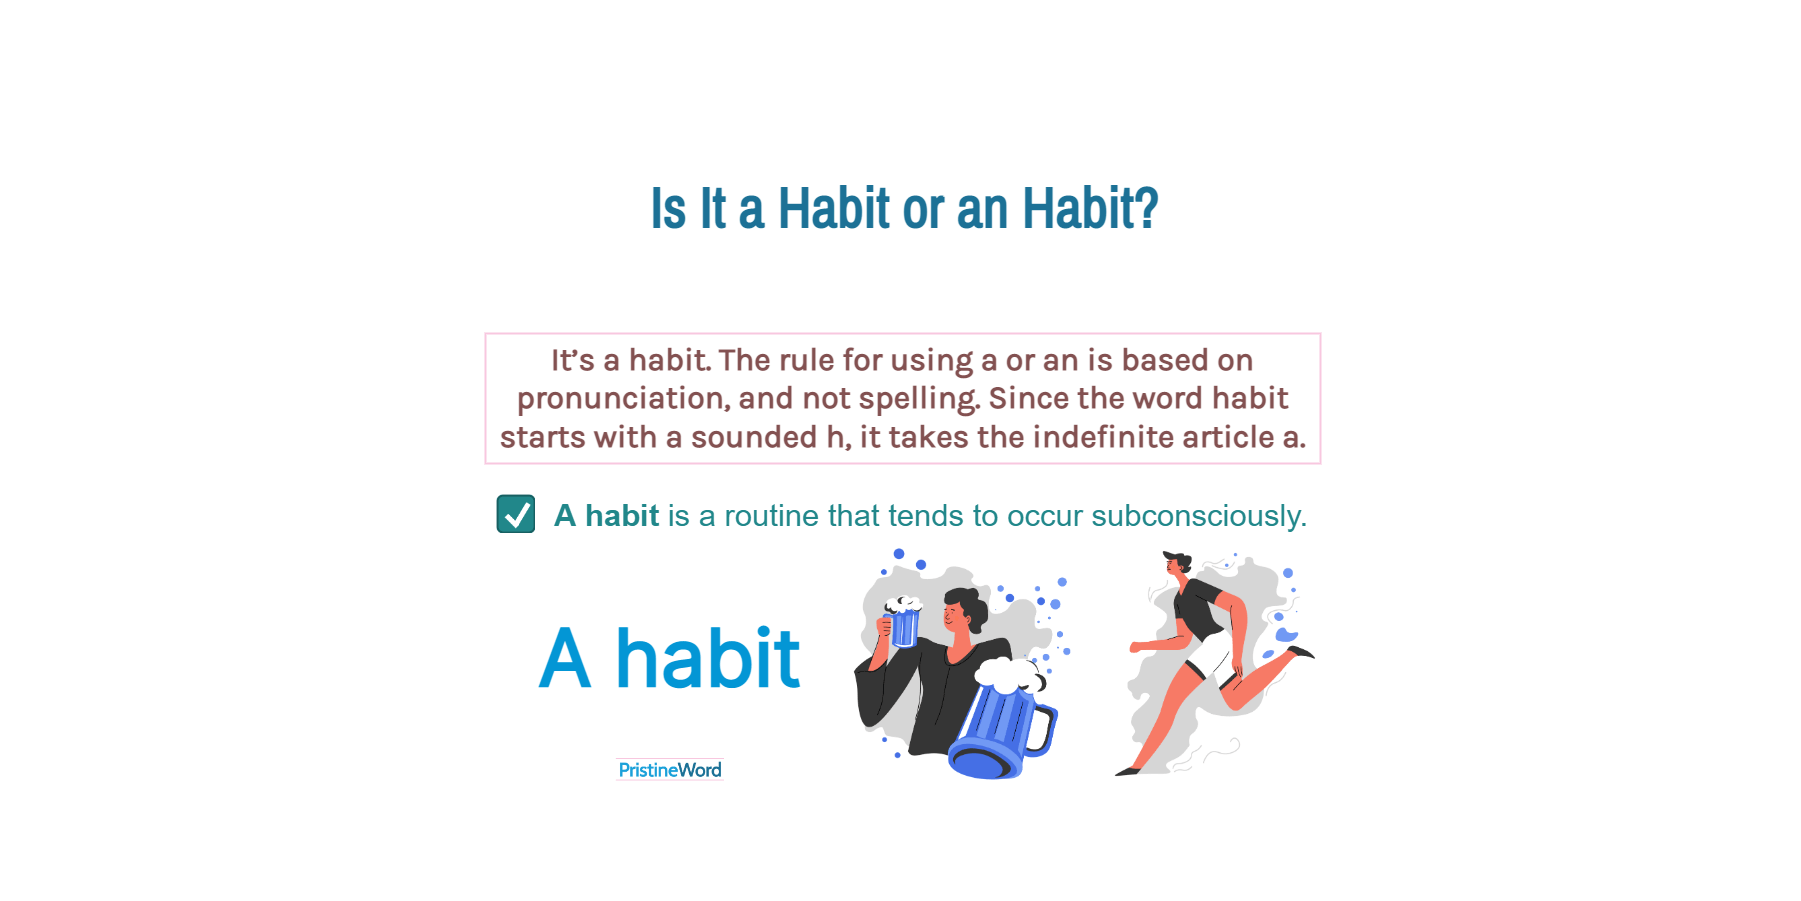 Is It a habit or an habit?